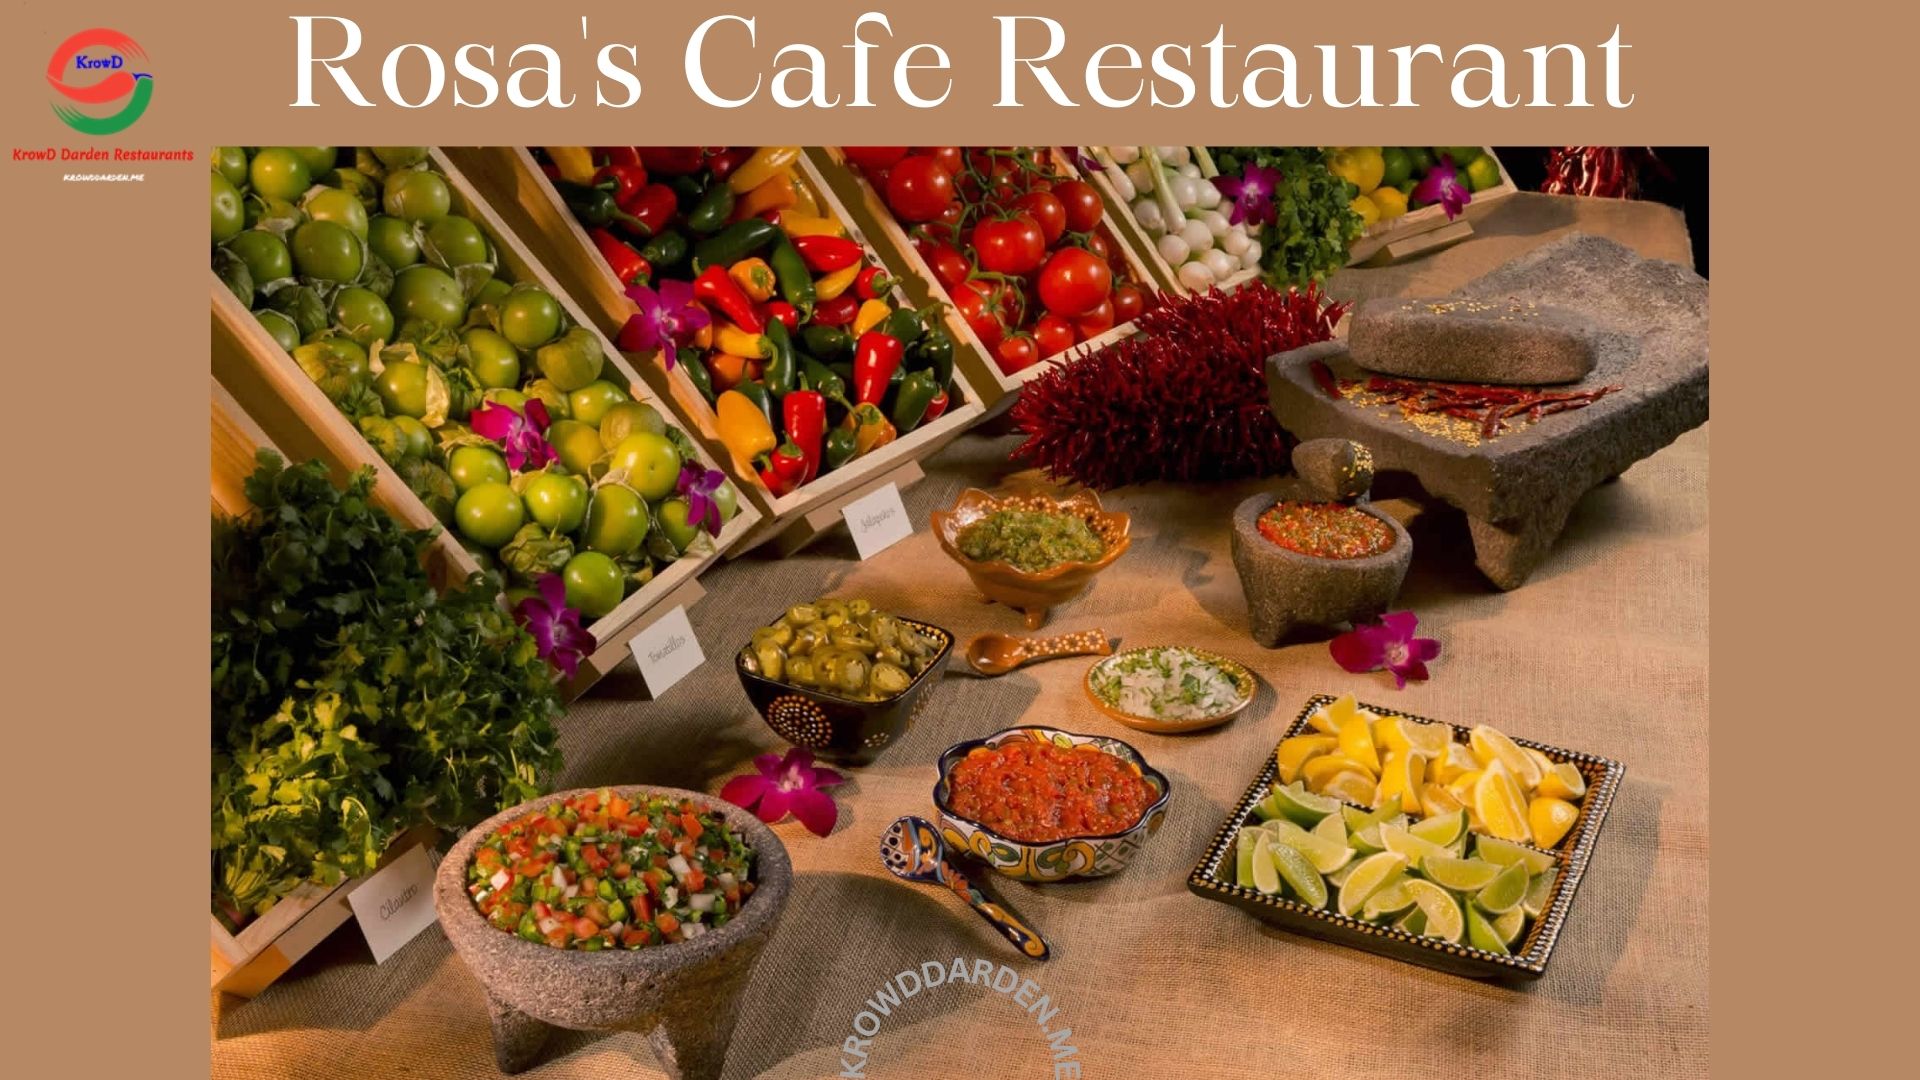 Rosas Cafe | Rosa's Cafe Restaurant | Rosas Tortilla Factory | Rosa's Cafe order online | Rosa's Cafe delivery